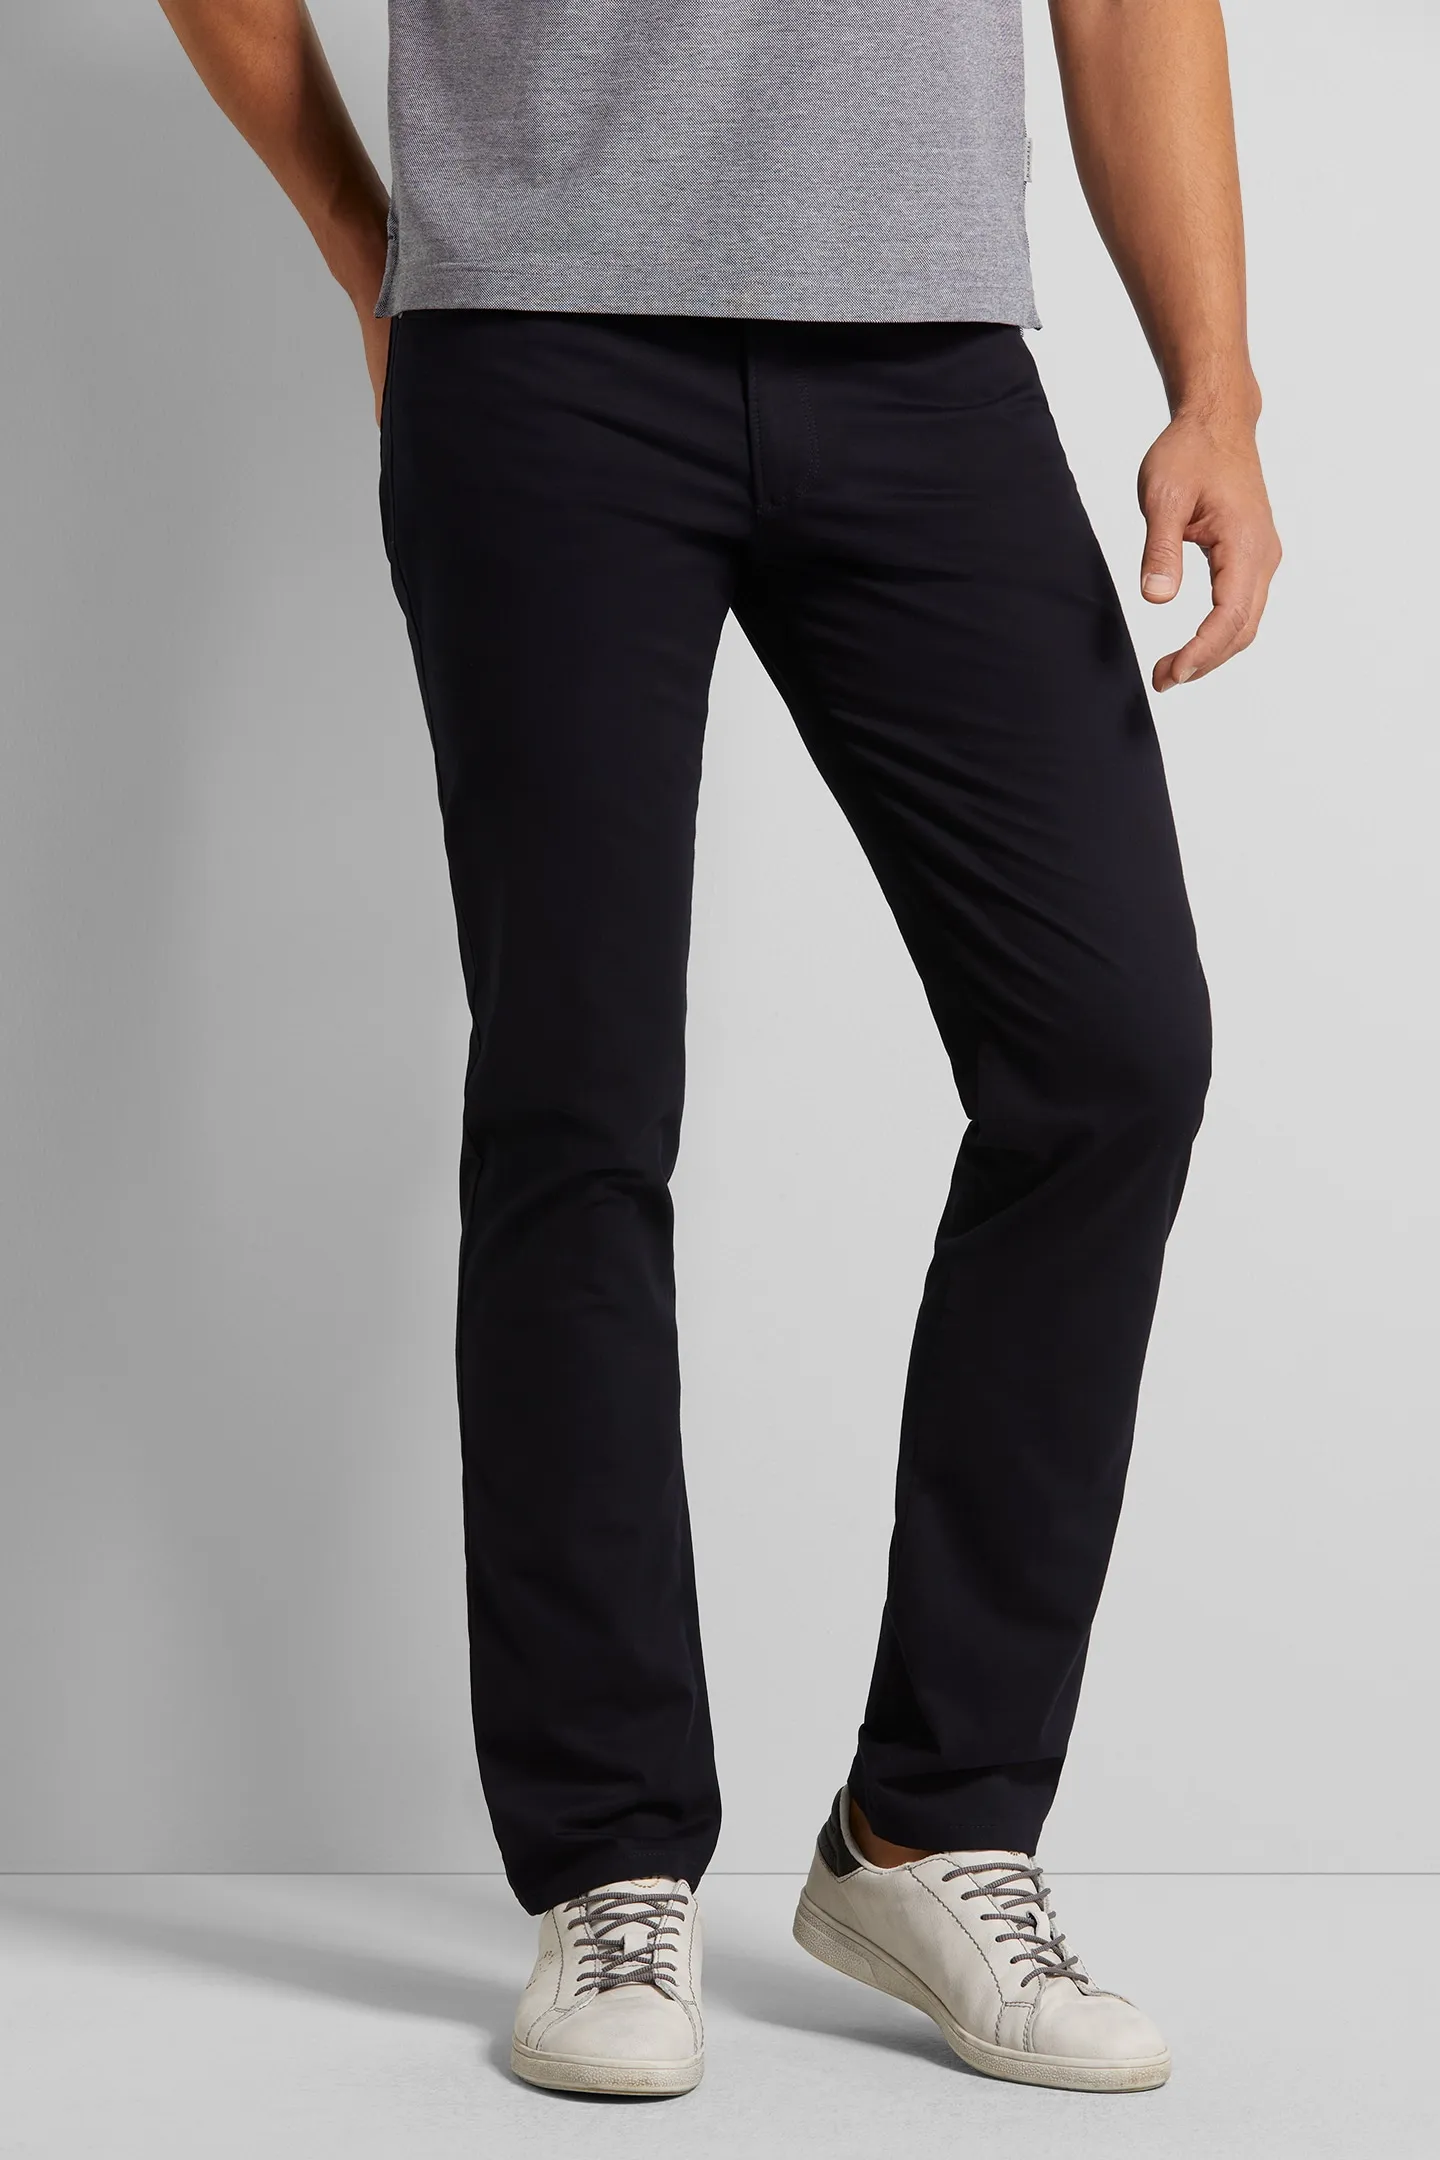 5-Pocket-Hose BUGATTI Gr. 34, Länge 36, blau Herren Hosen 5-Pocket-Hosen mit langanhaltender Farbechtheit